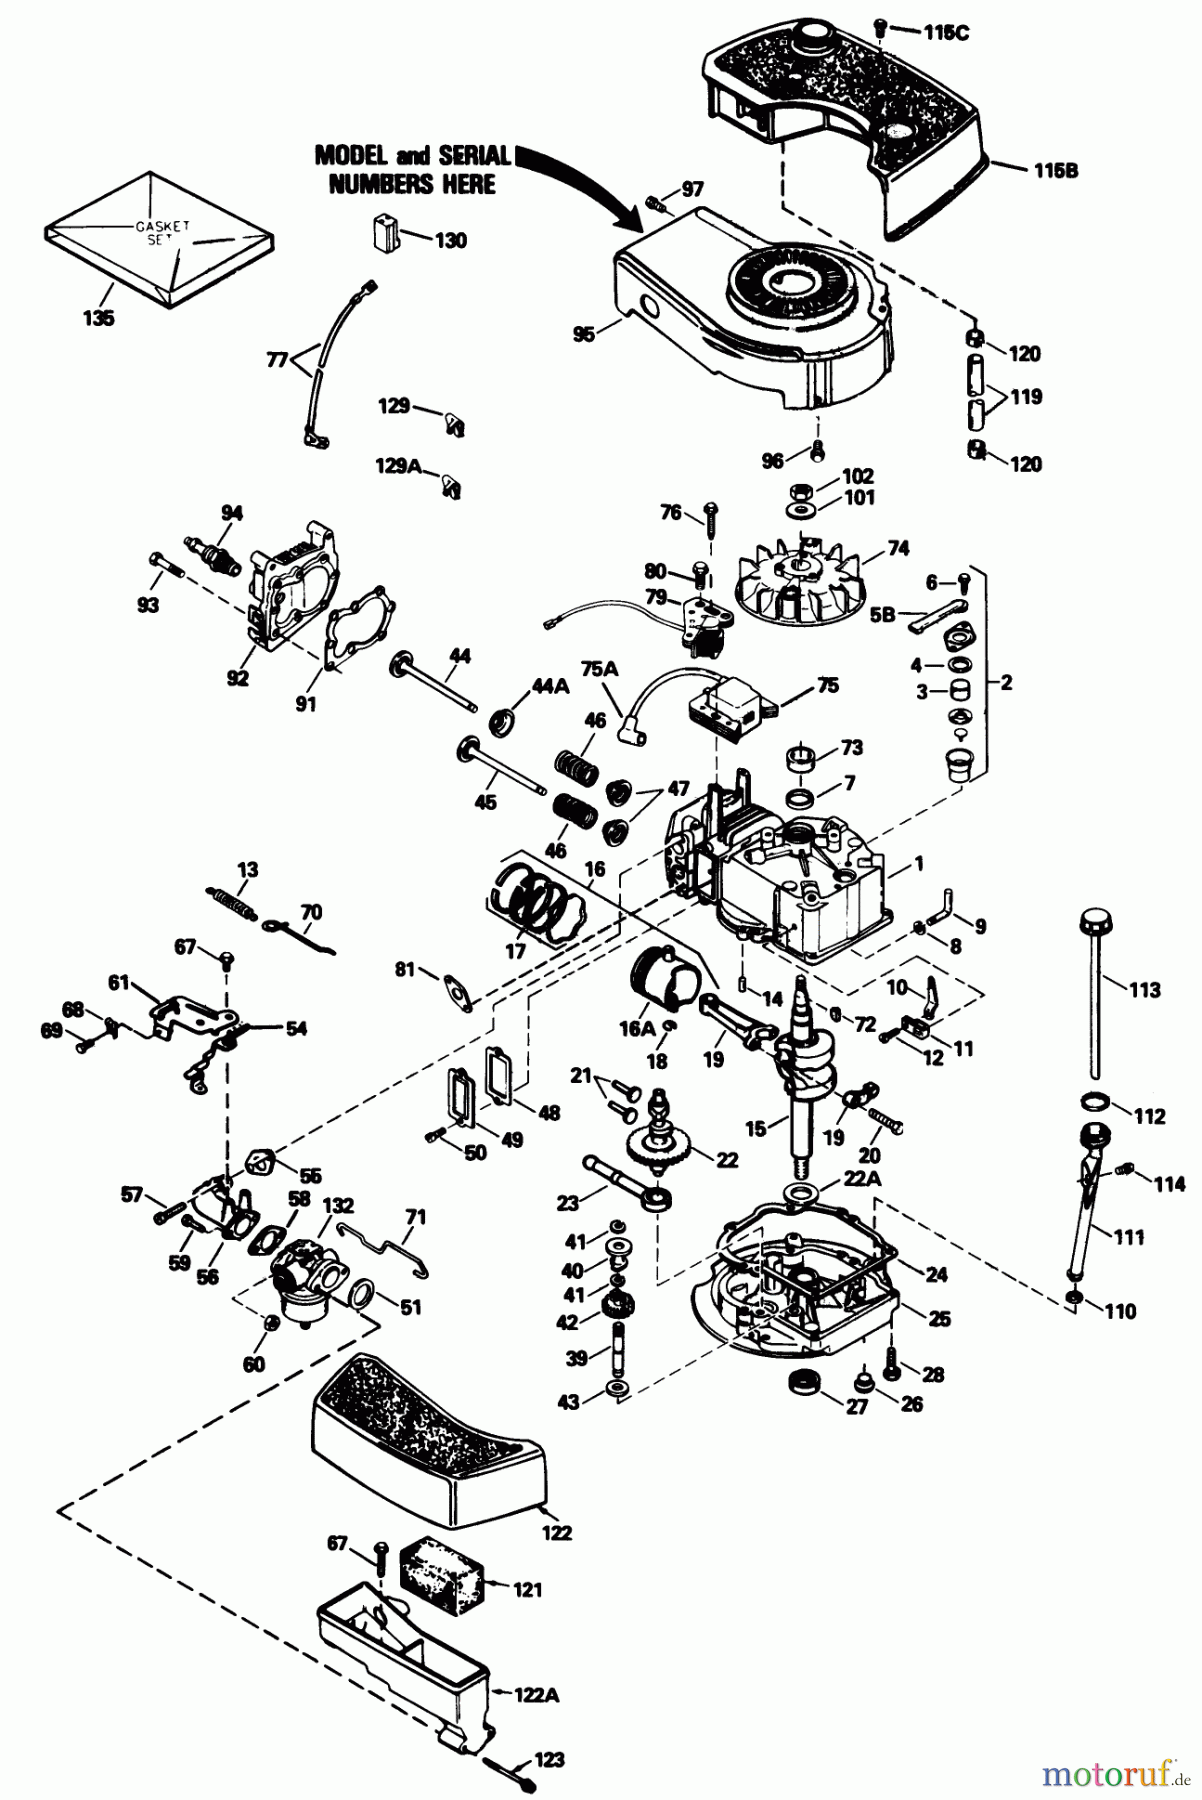  Toro Neu Mowers, Walk-Behind Seite 1 20677 - Toro Lawnmower, 1990 (0000001-0002101) ENGINE MODEL NO. TNT 100-10104F